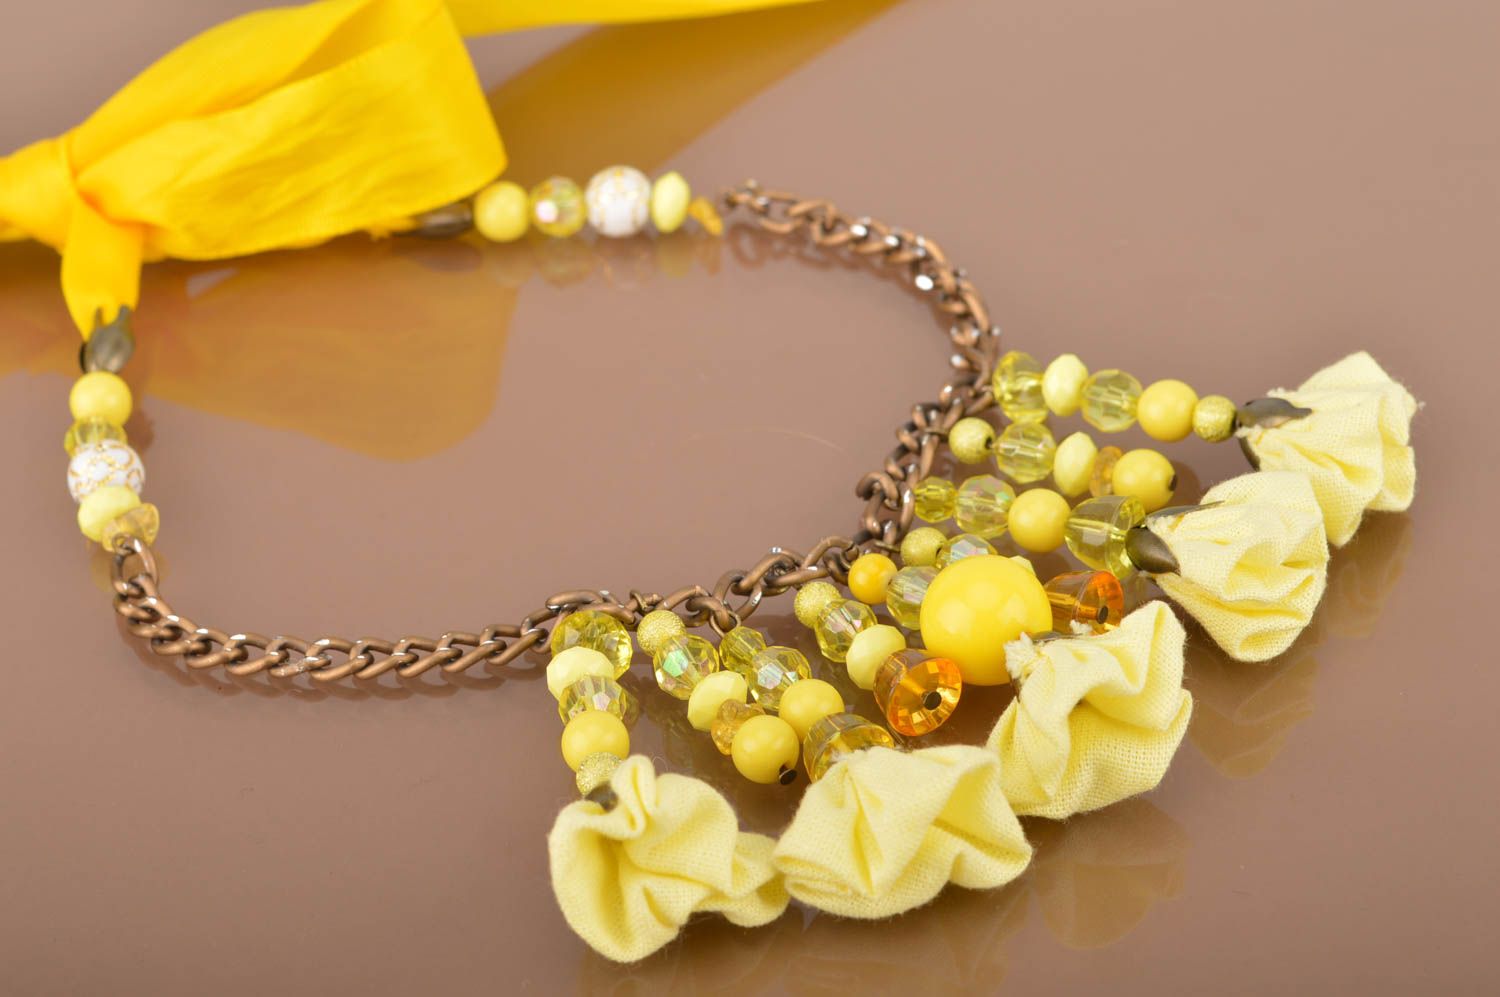 Ожерелье на цепочке с цветами и бусинами нарядное в желтых тонах ручная работа фото 2